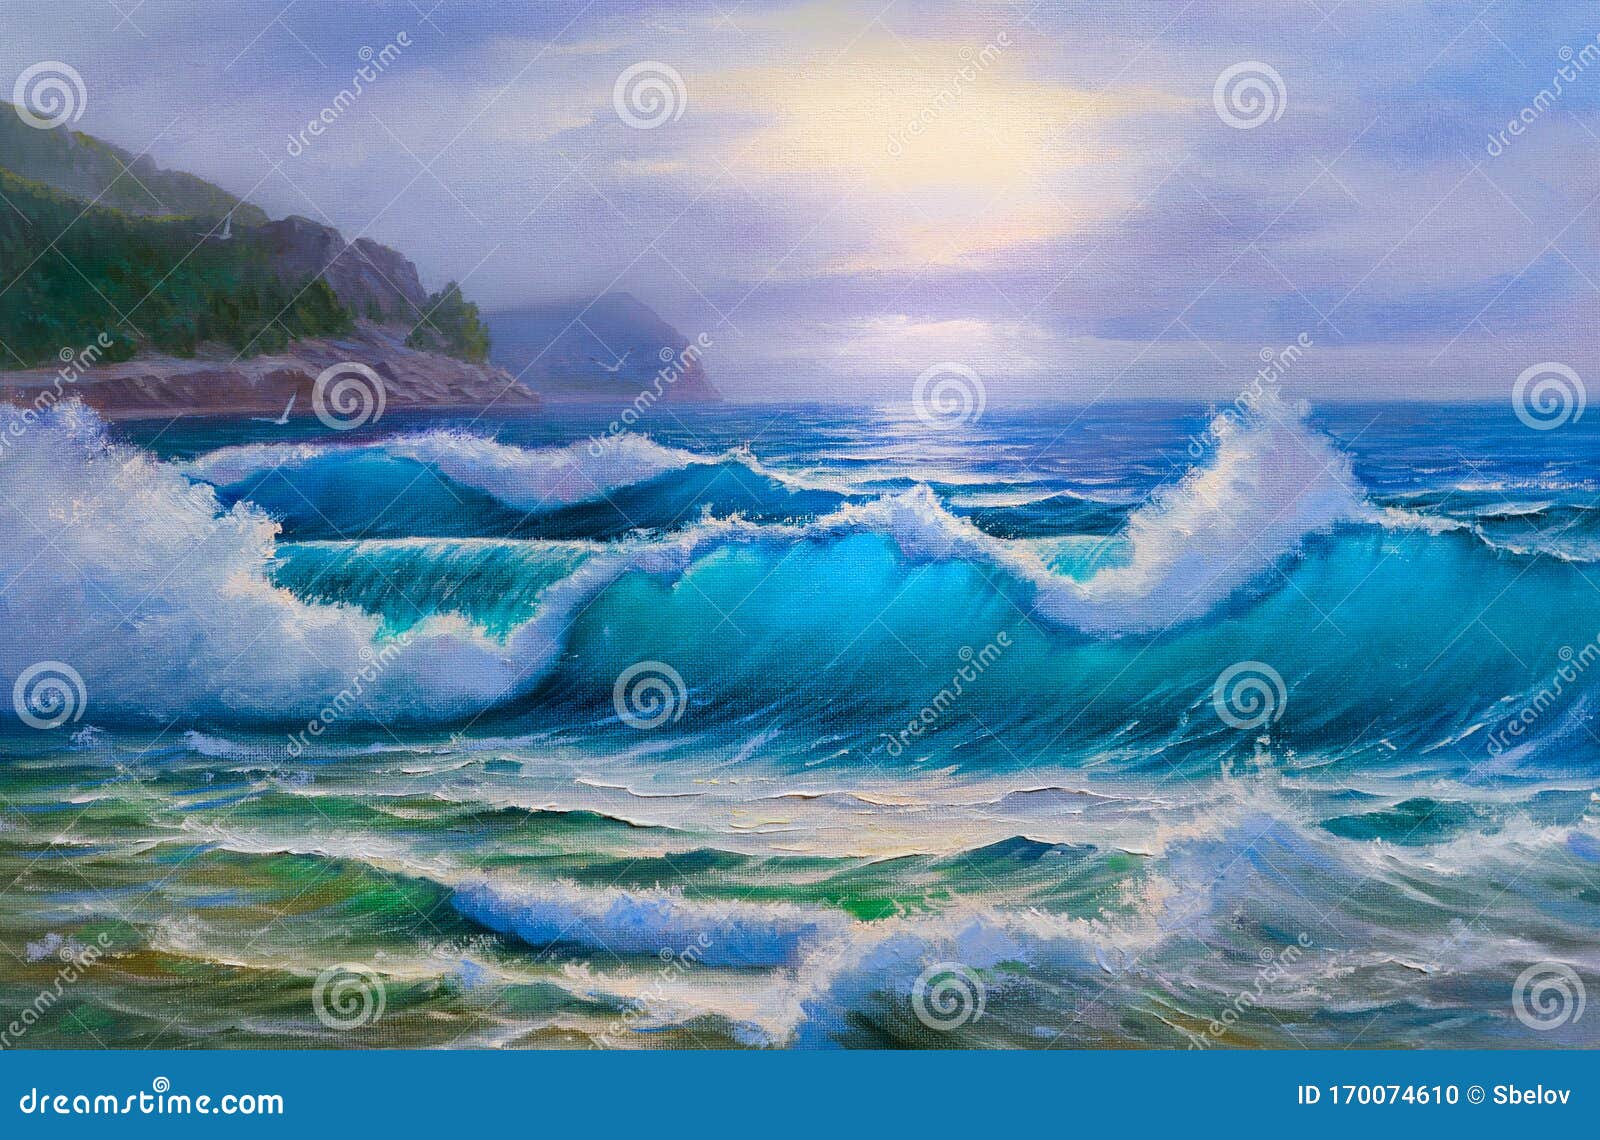 zoom Rang hier Zondst Op Zee, Schilderen Met Olie Op Doek Stock Illustratie - Illustration  of zeegezicht, canvas: 170074610